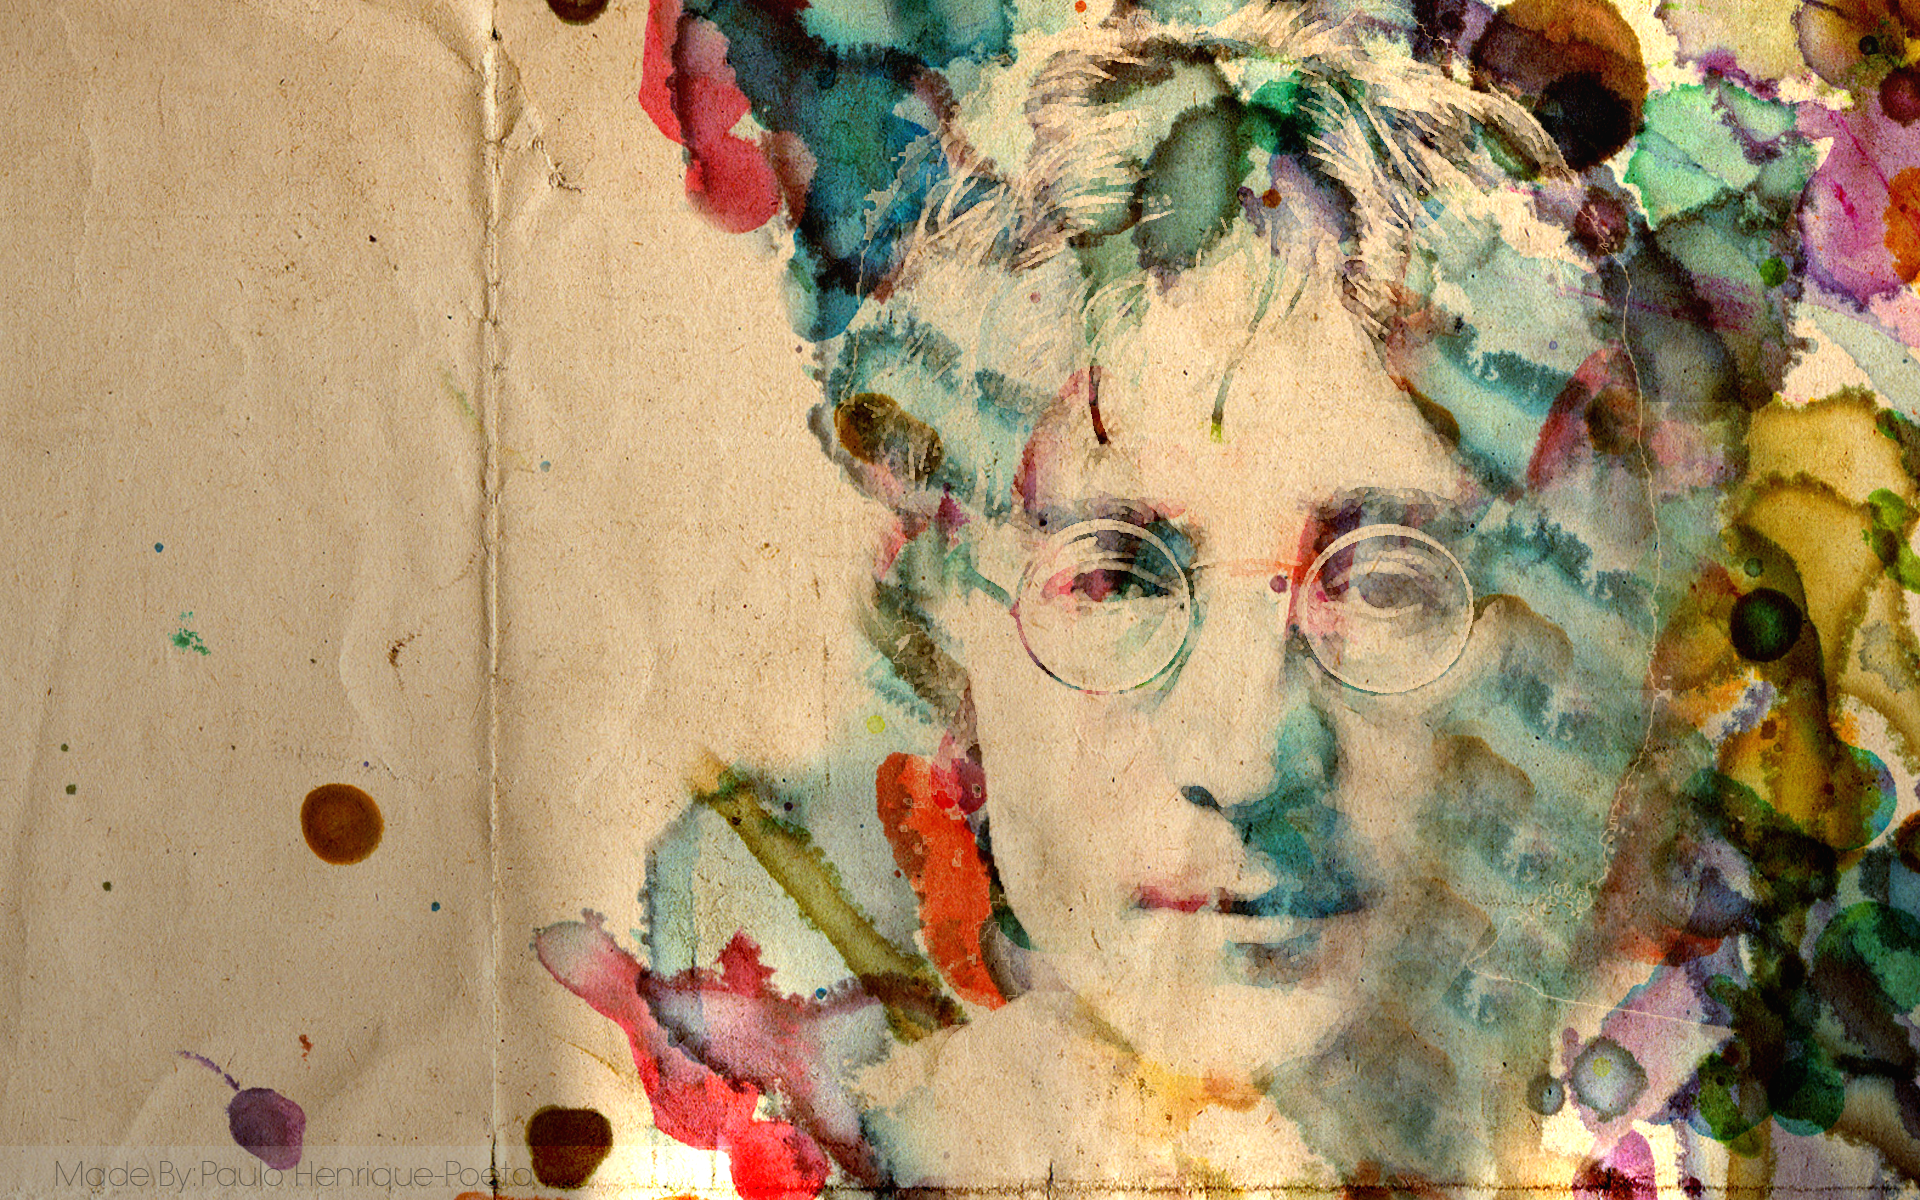 John Lennon Wallpaper by PauloHSS on DeviantArt